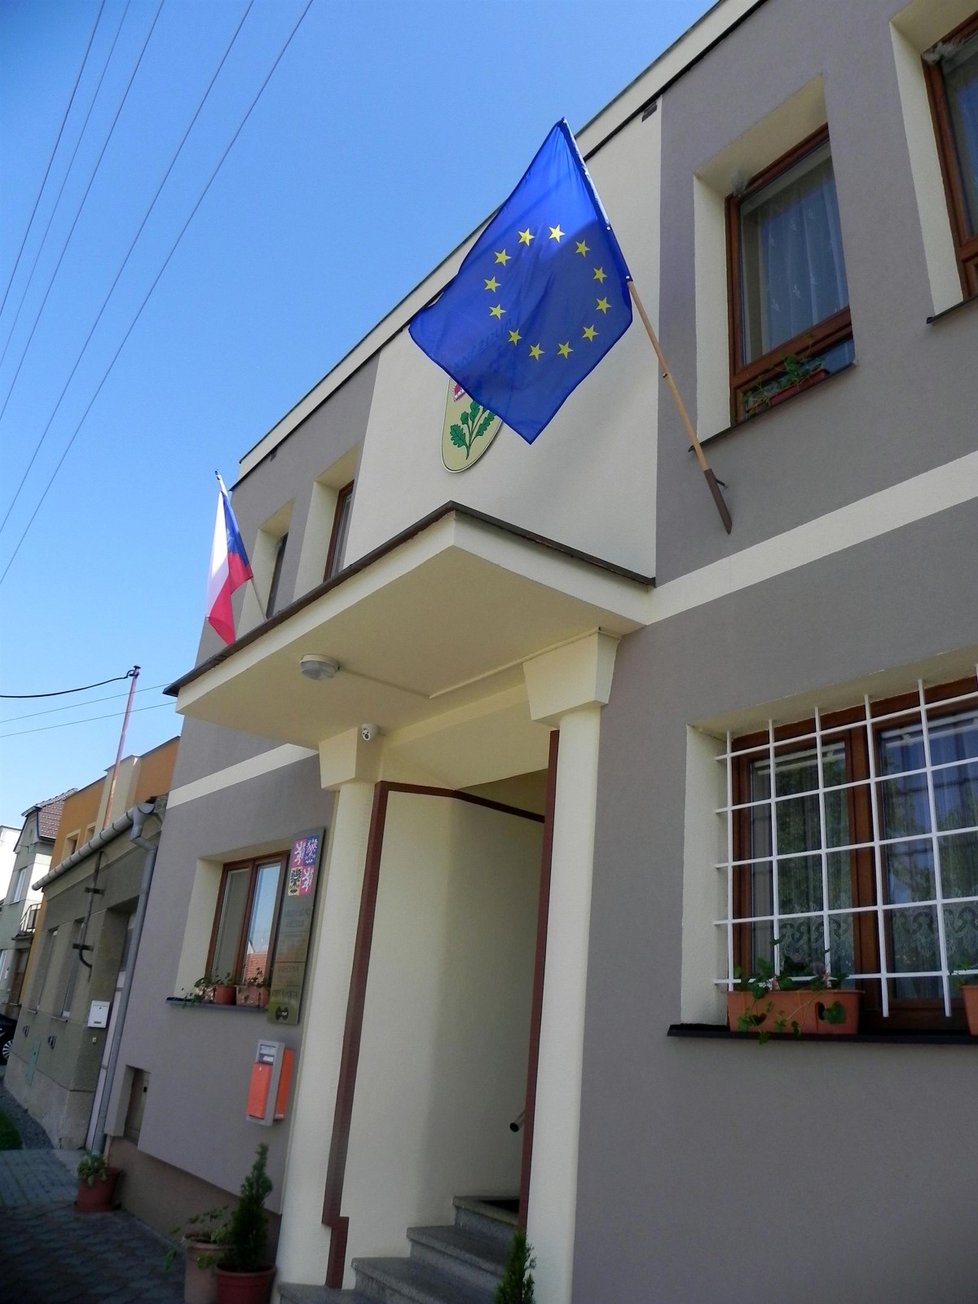 Vlajka Evropské unie na kněždubské radnici vesele plápolala. Voliči ale nedorazili